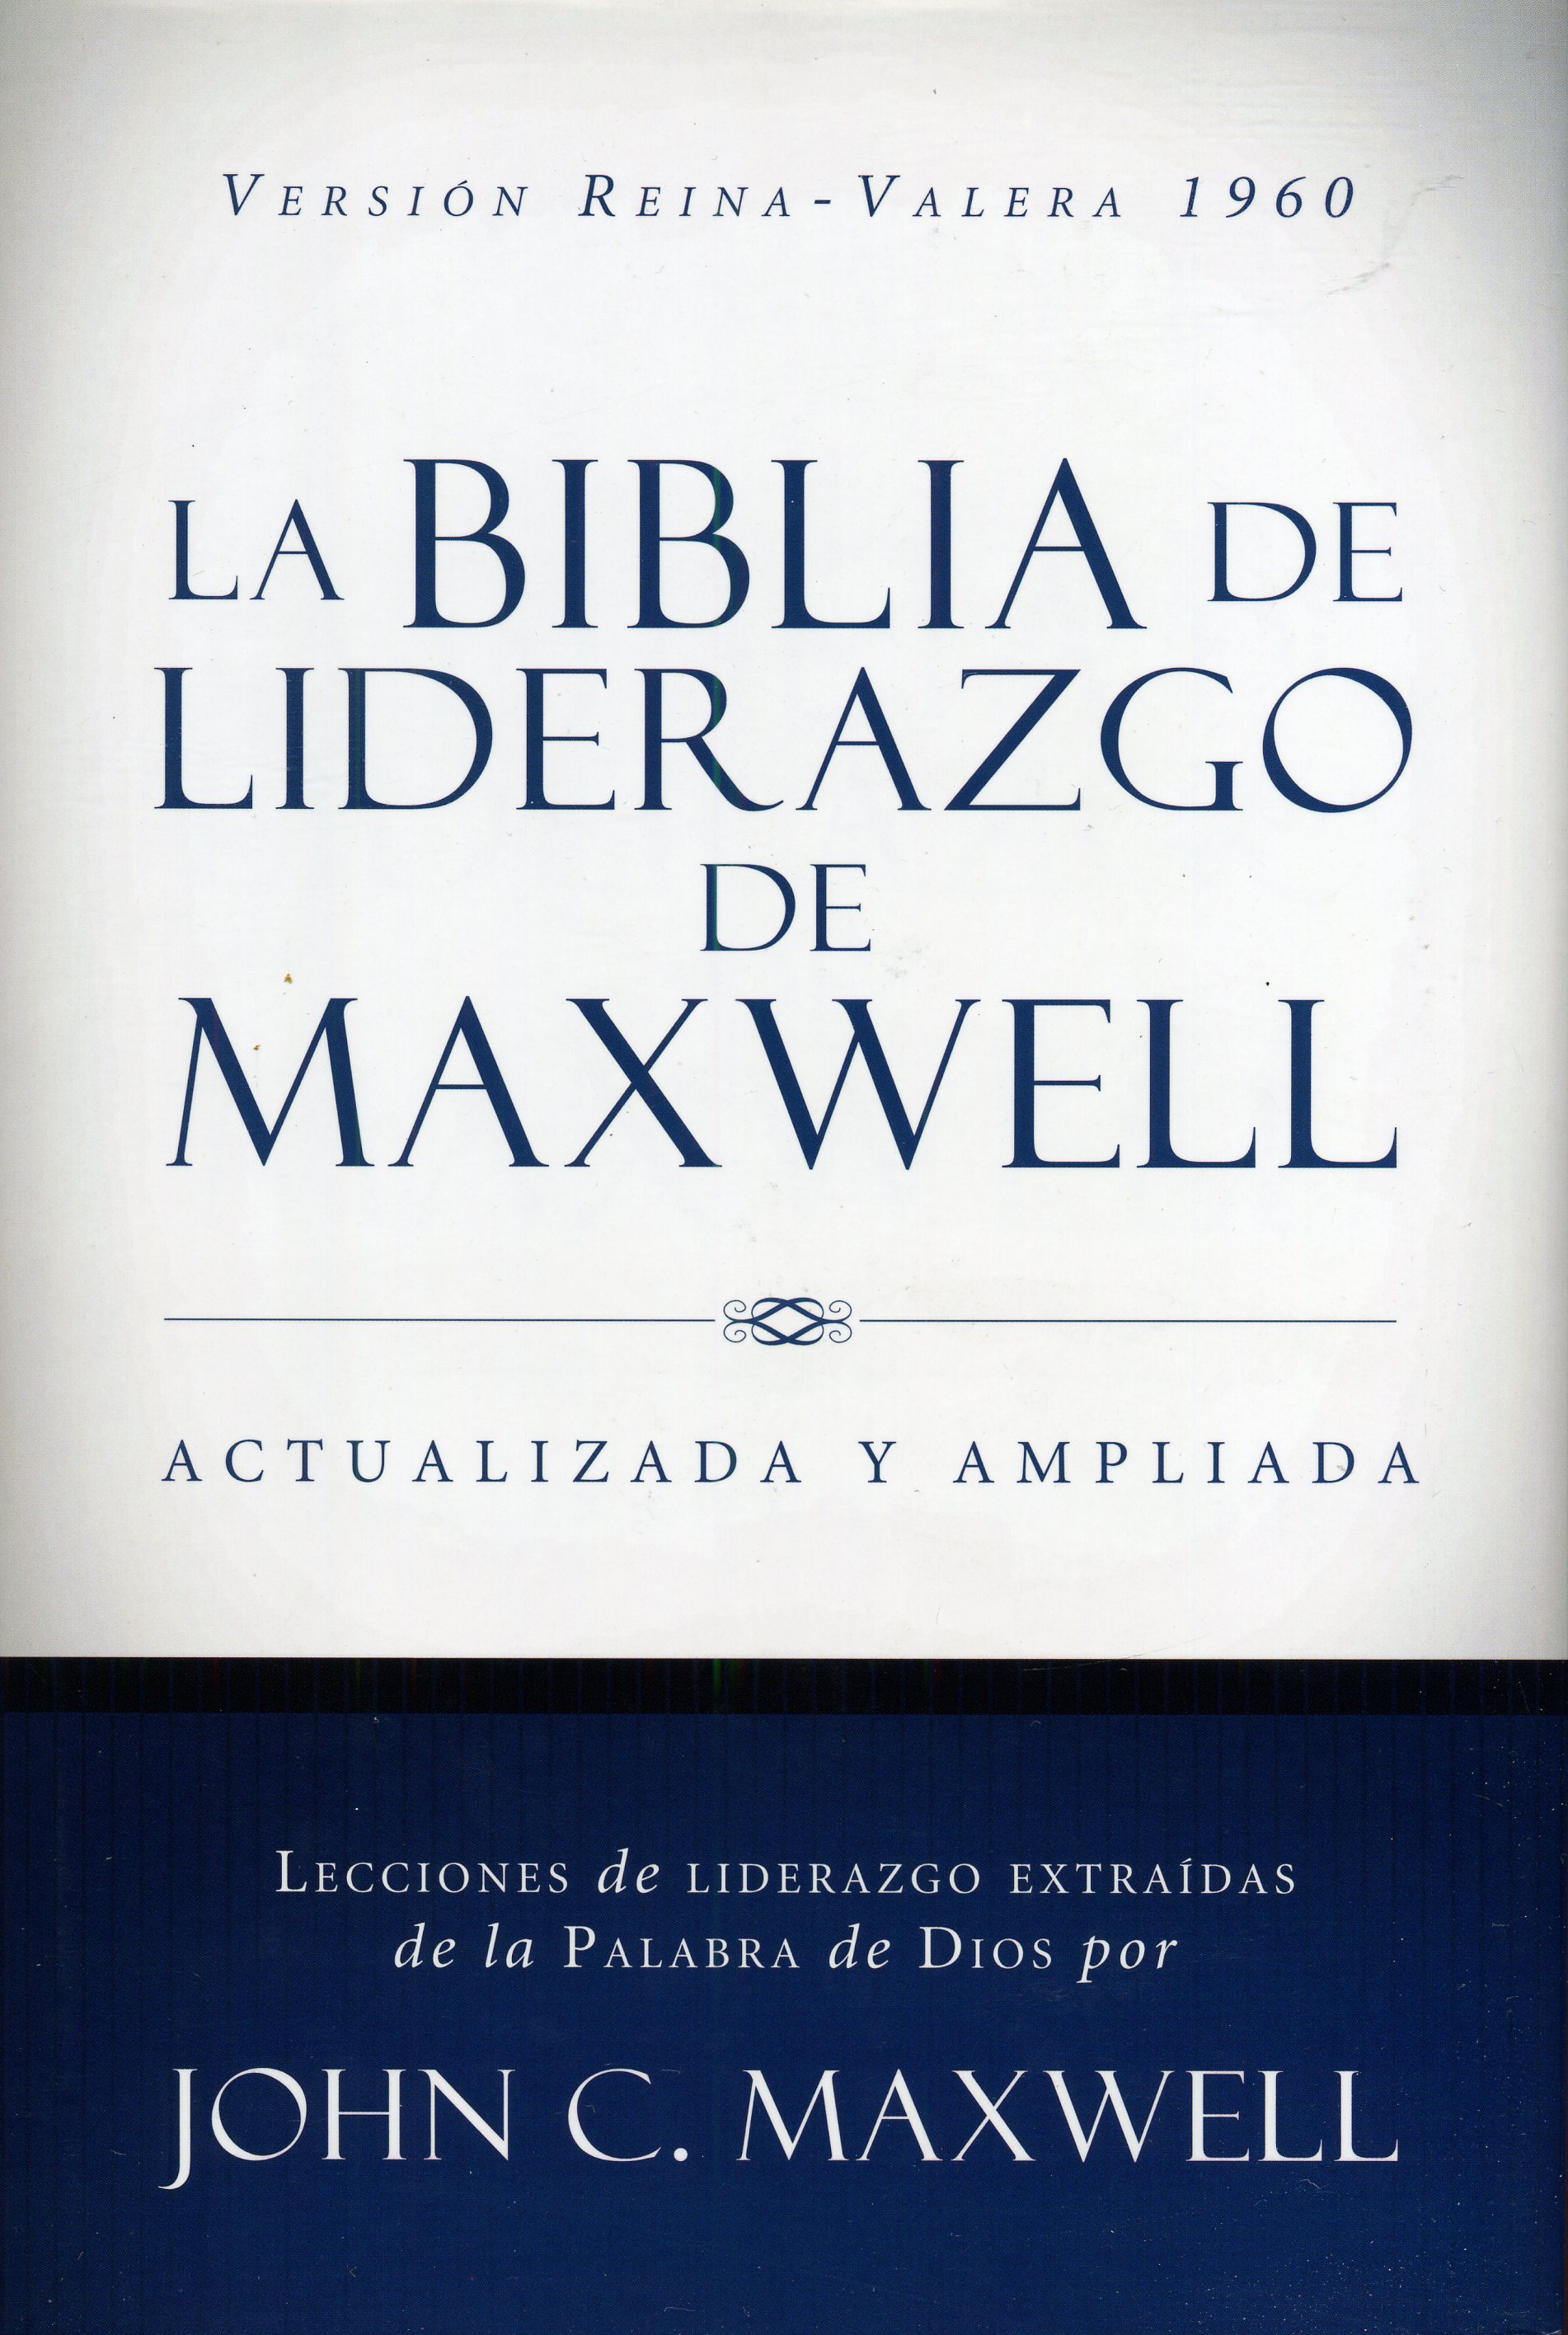 Biblia De Liderazgo De Maxwell RVR  (Actualizada Y Ampliada) Tapa Dura